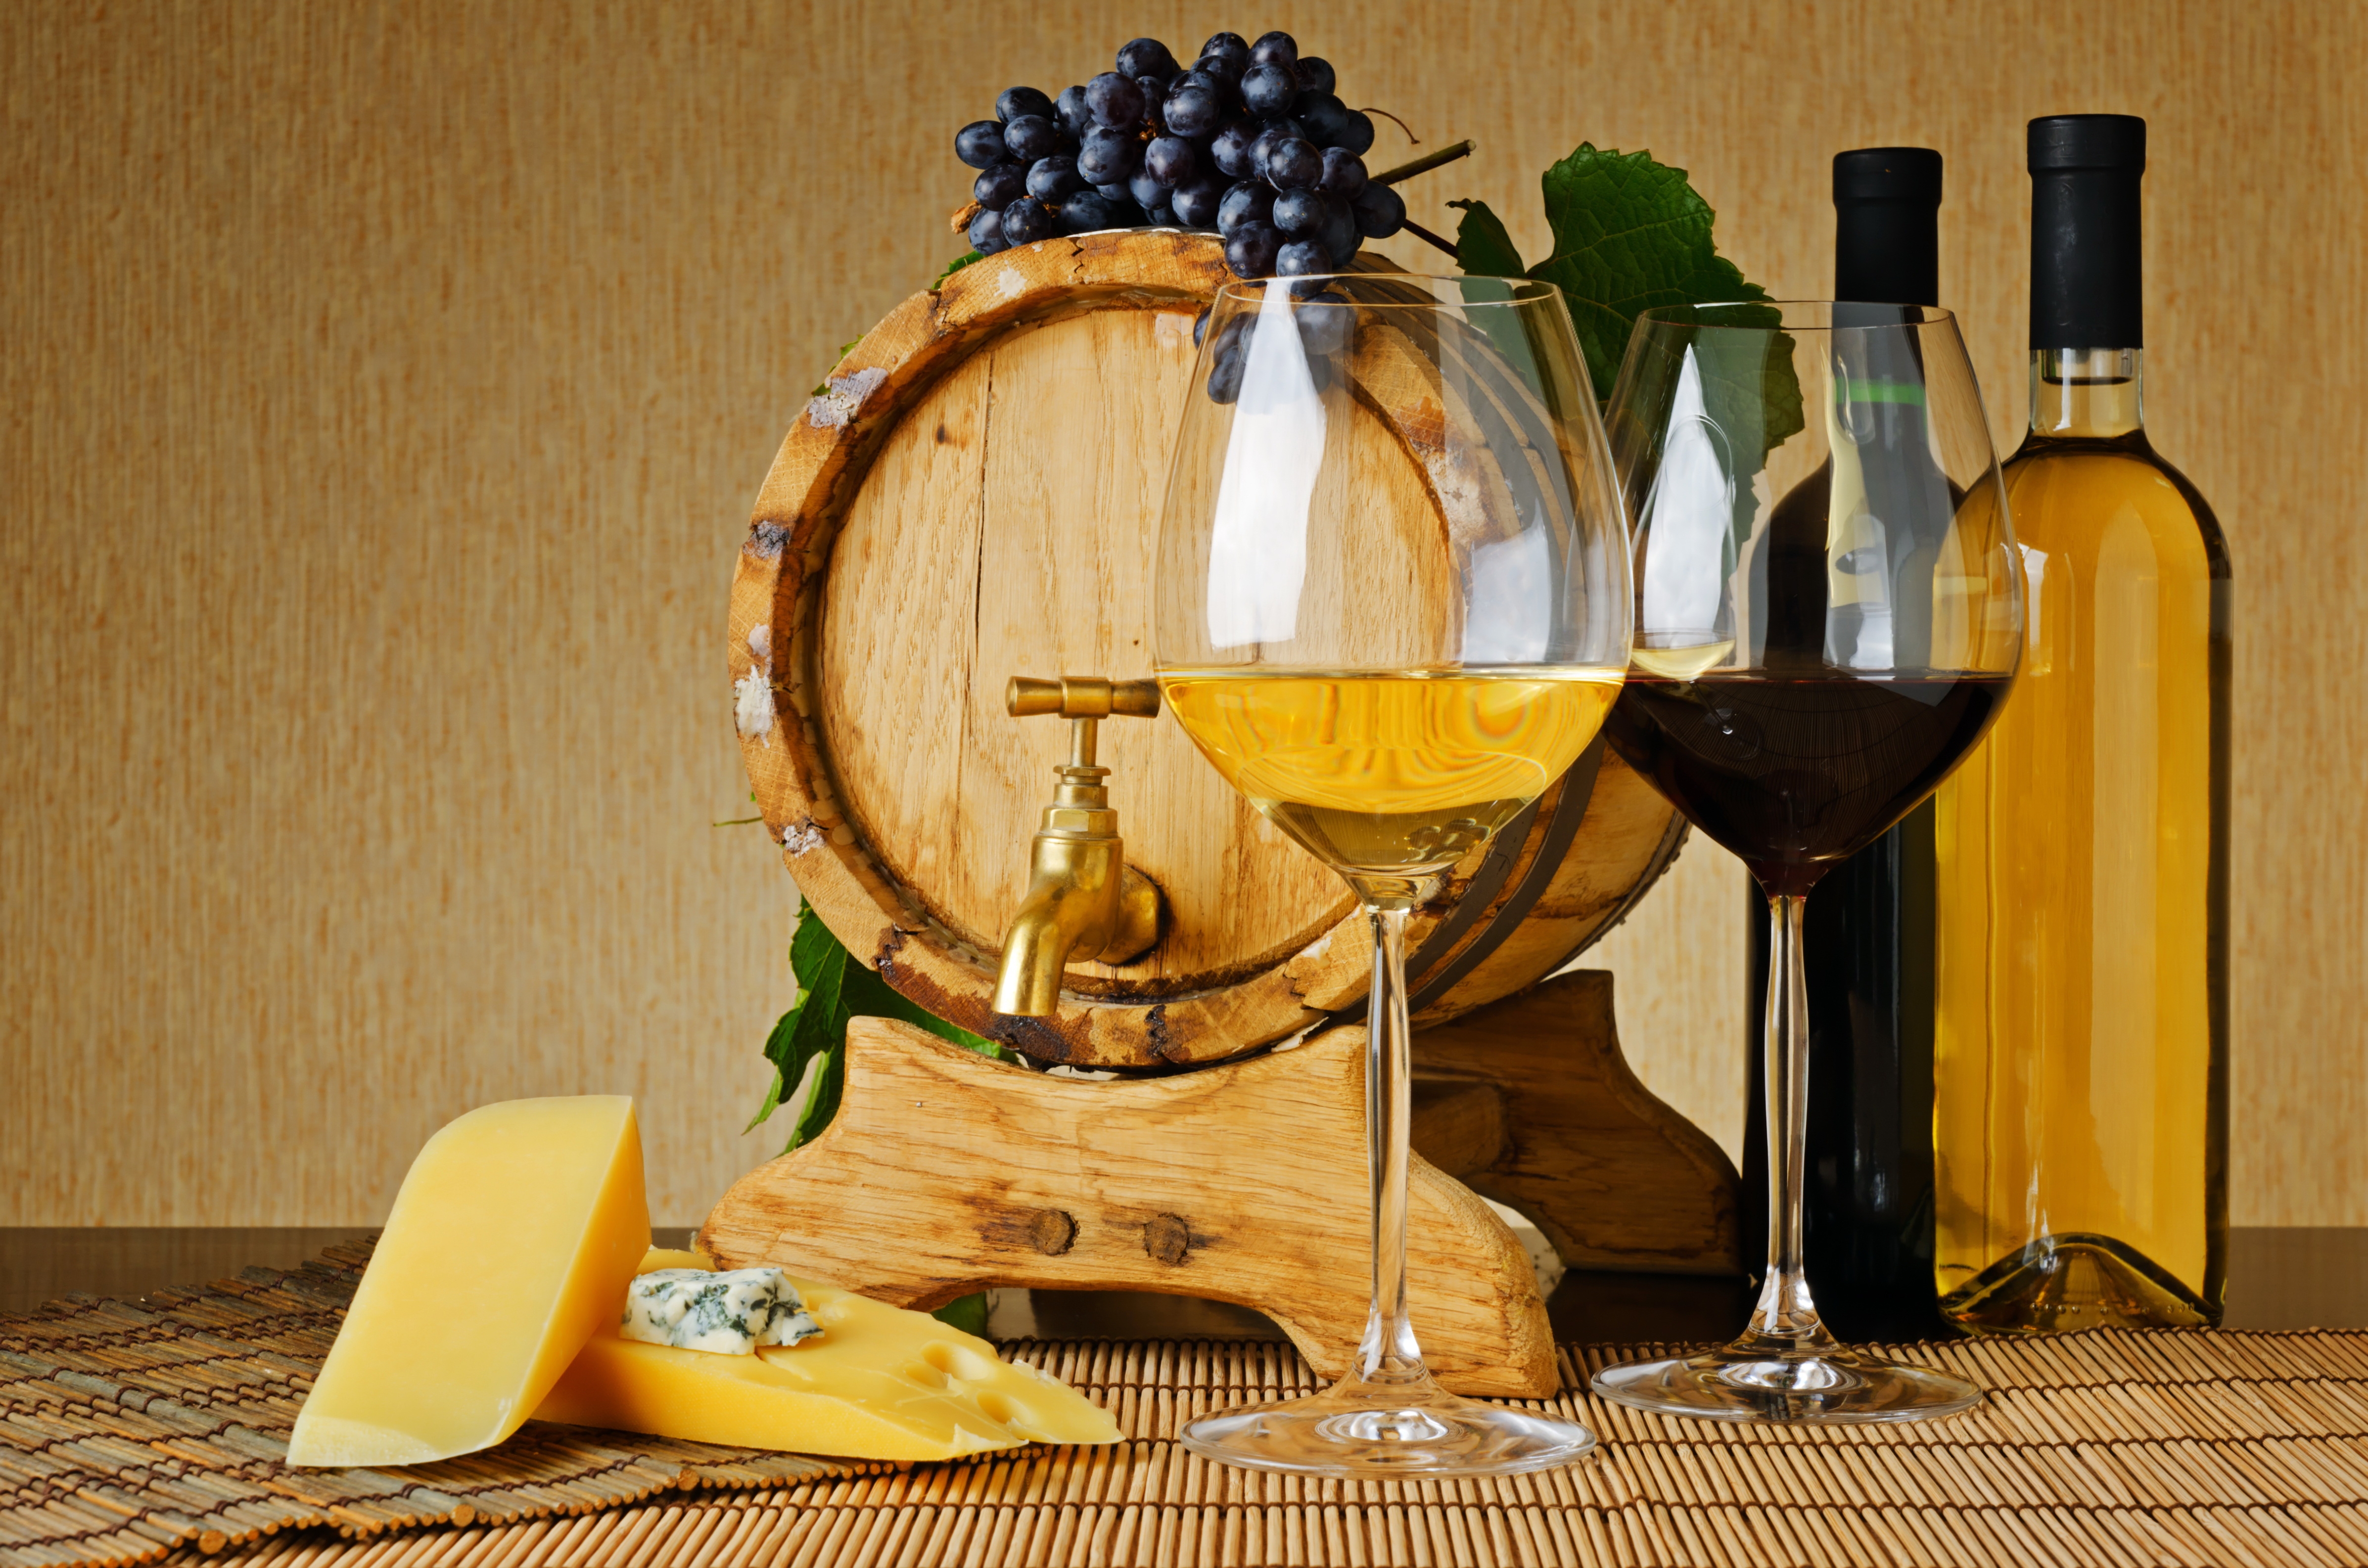 桌面上的壁纸产品 奶酪 葡萄酒